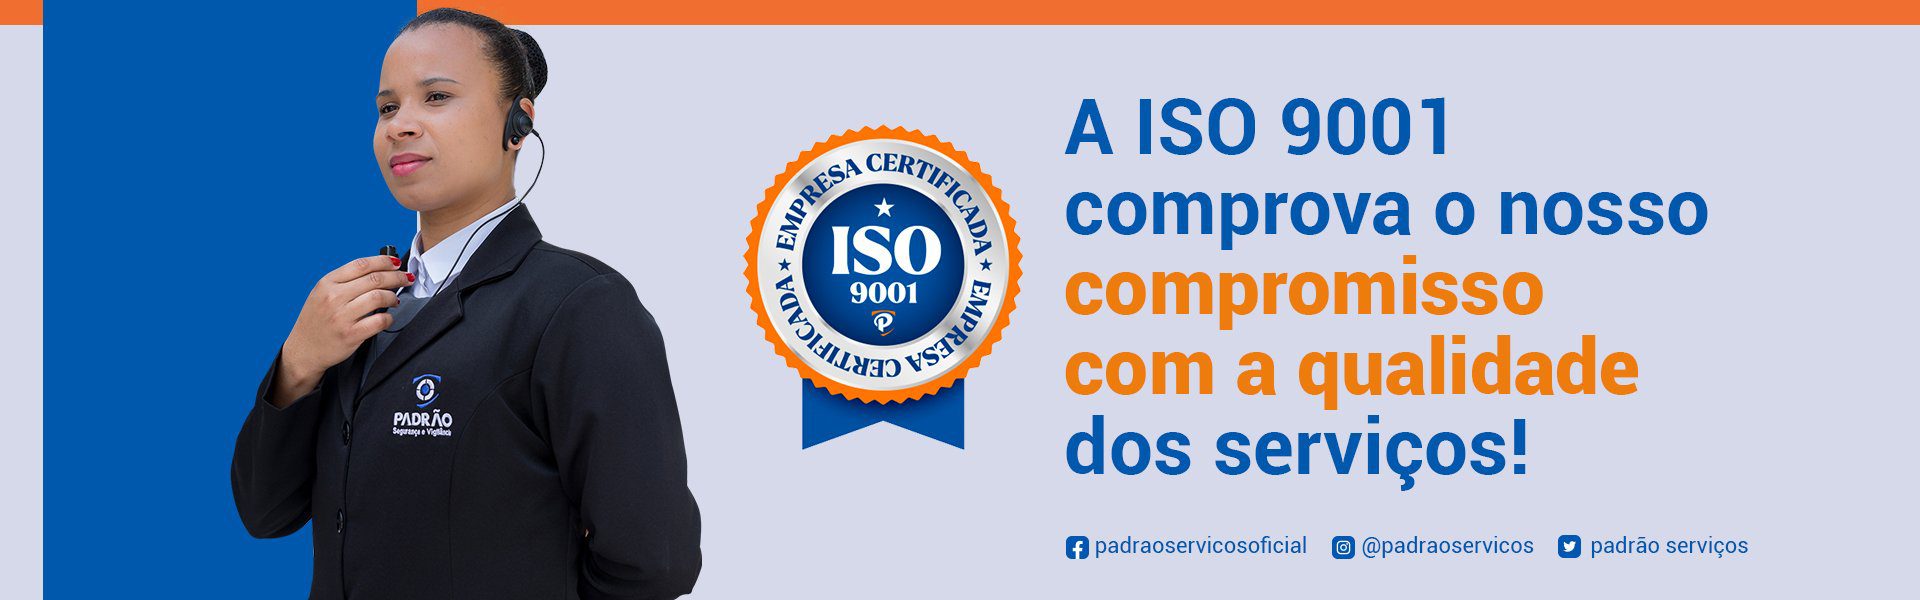 ISO 9001 Padrão